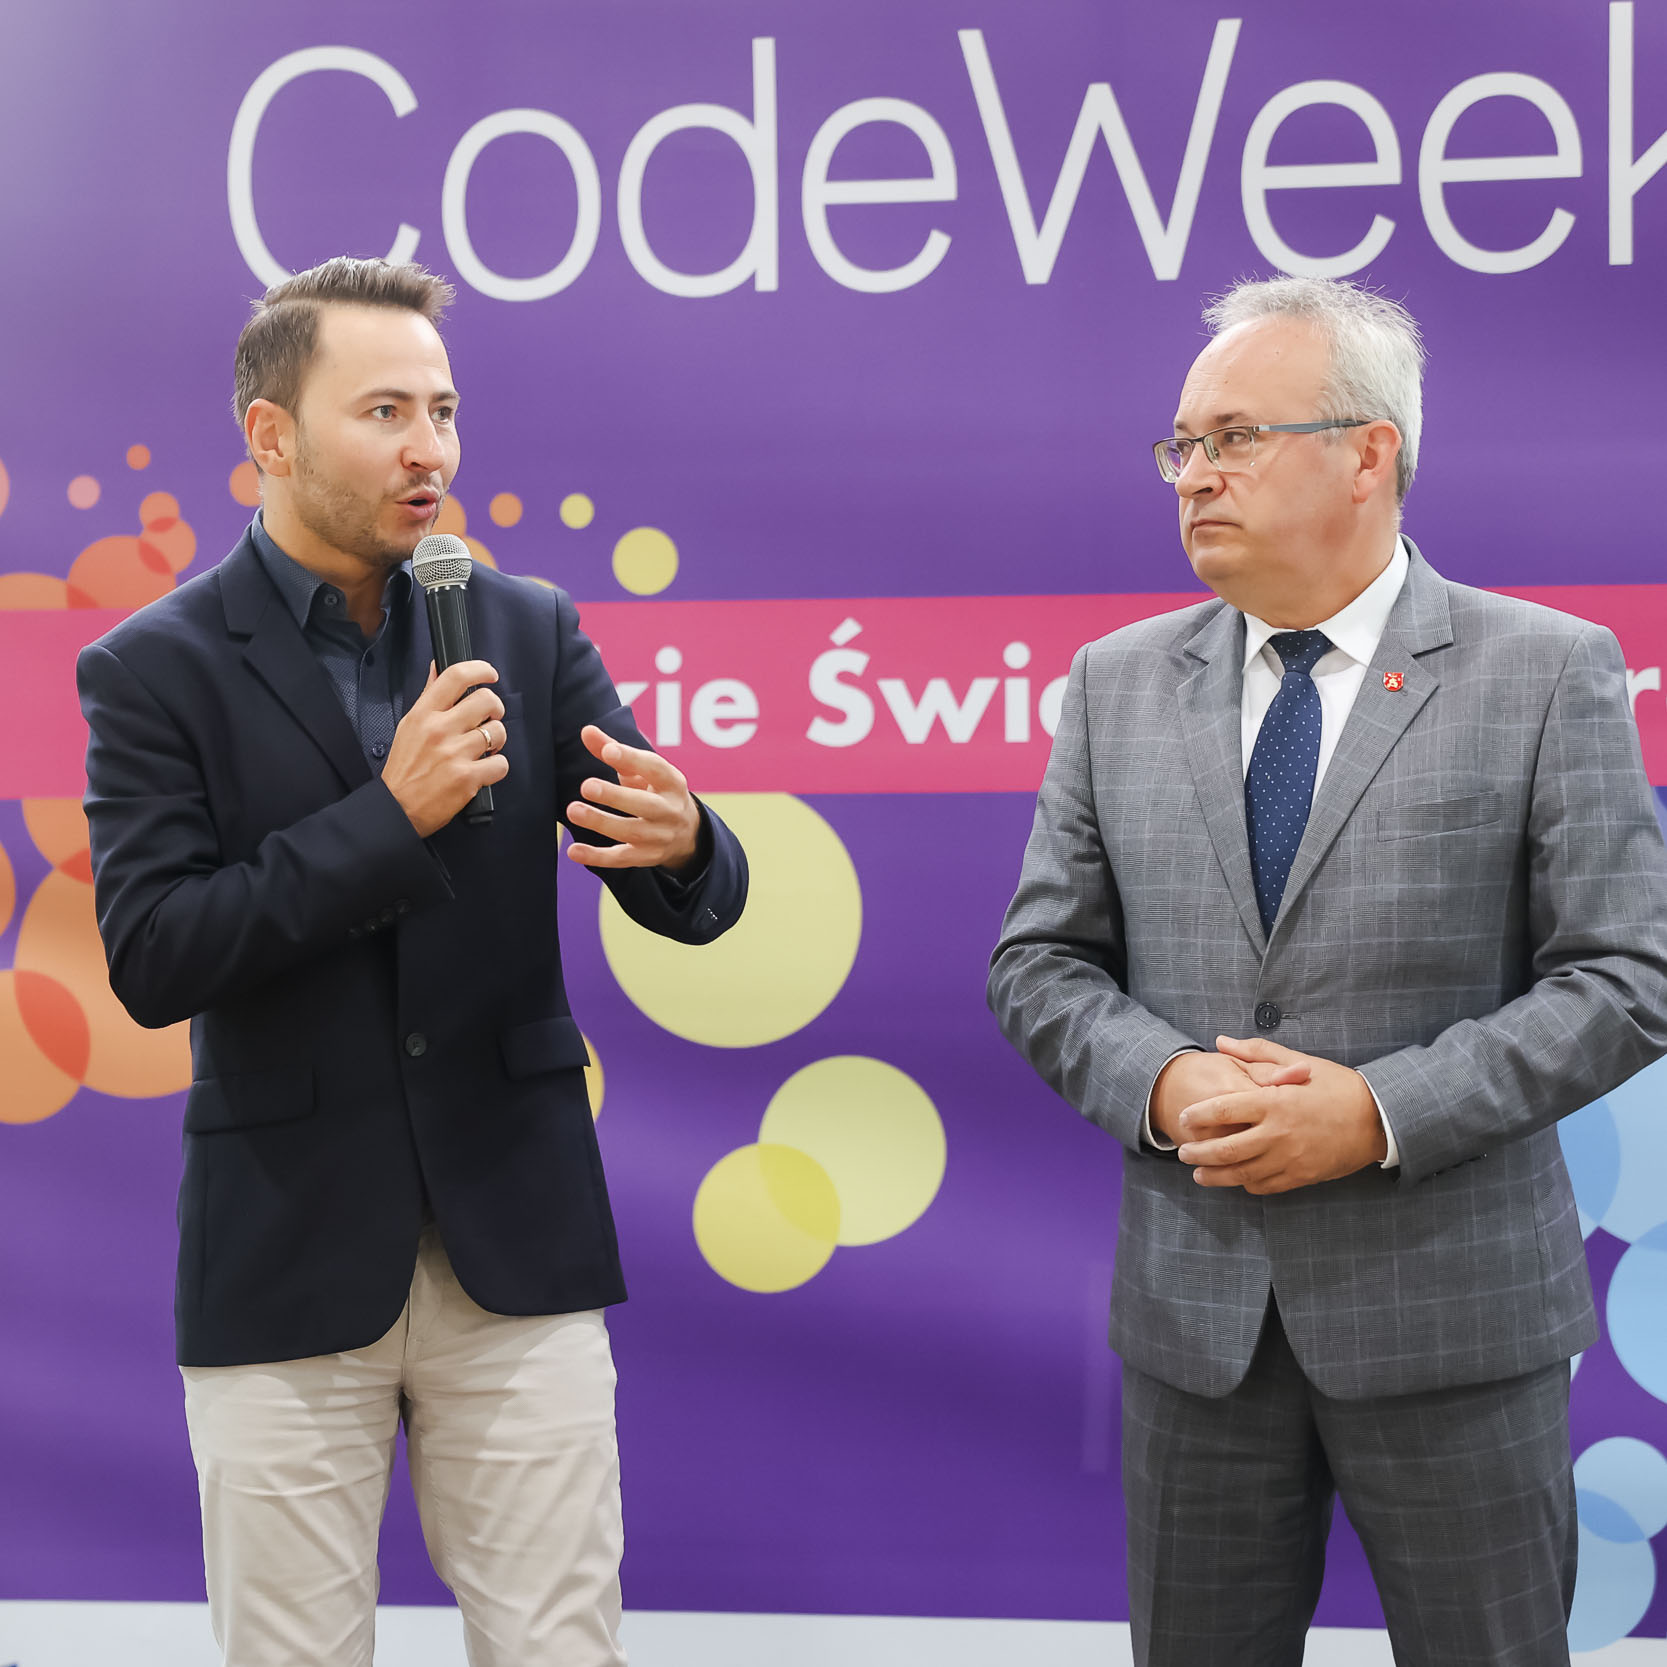 Przemawiający na tle ścianki Codeweek moderator wydarzenia, obok niego Burmistrz Augustowa Mirosław Karolczuk